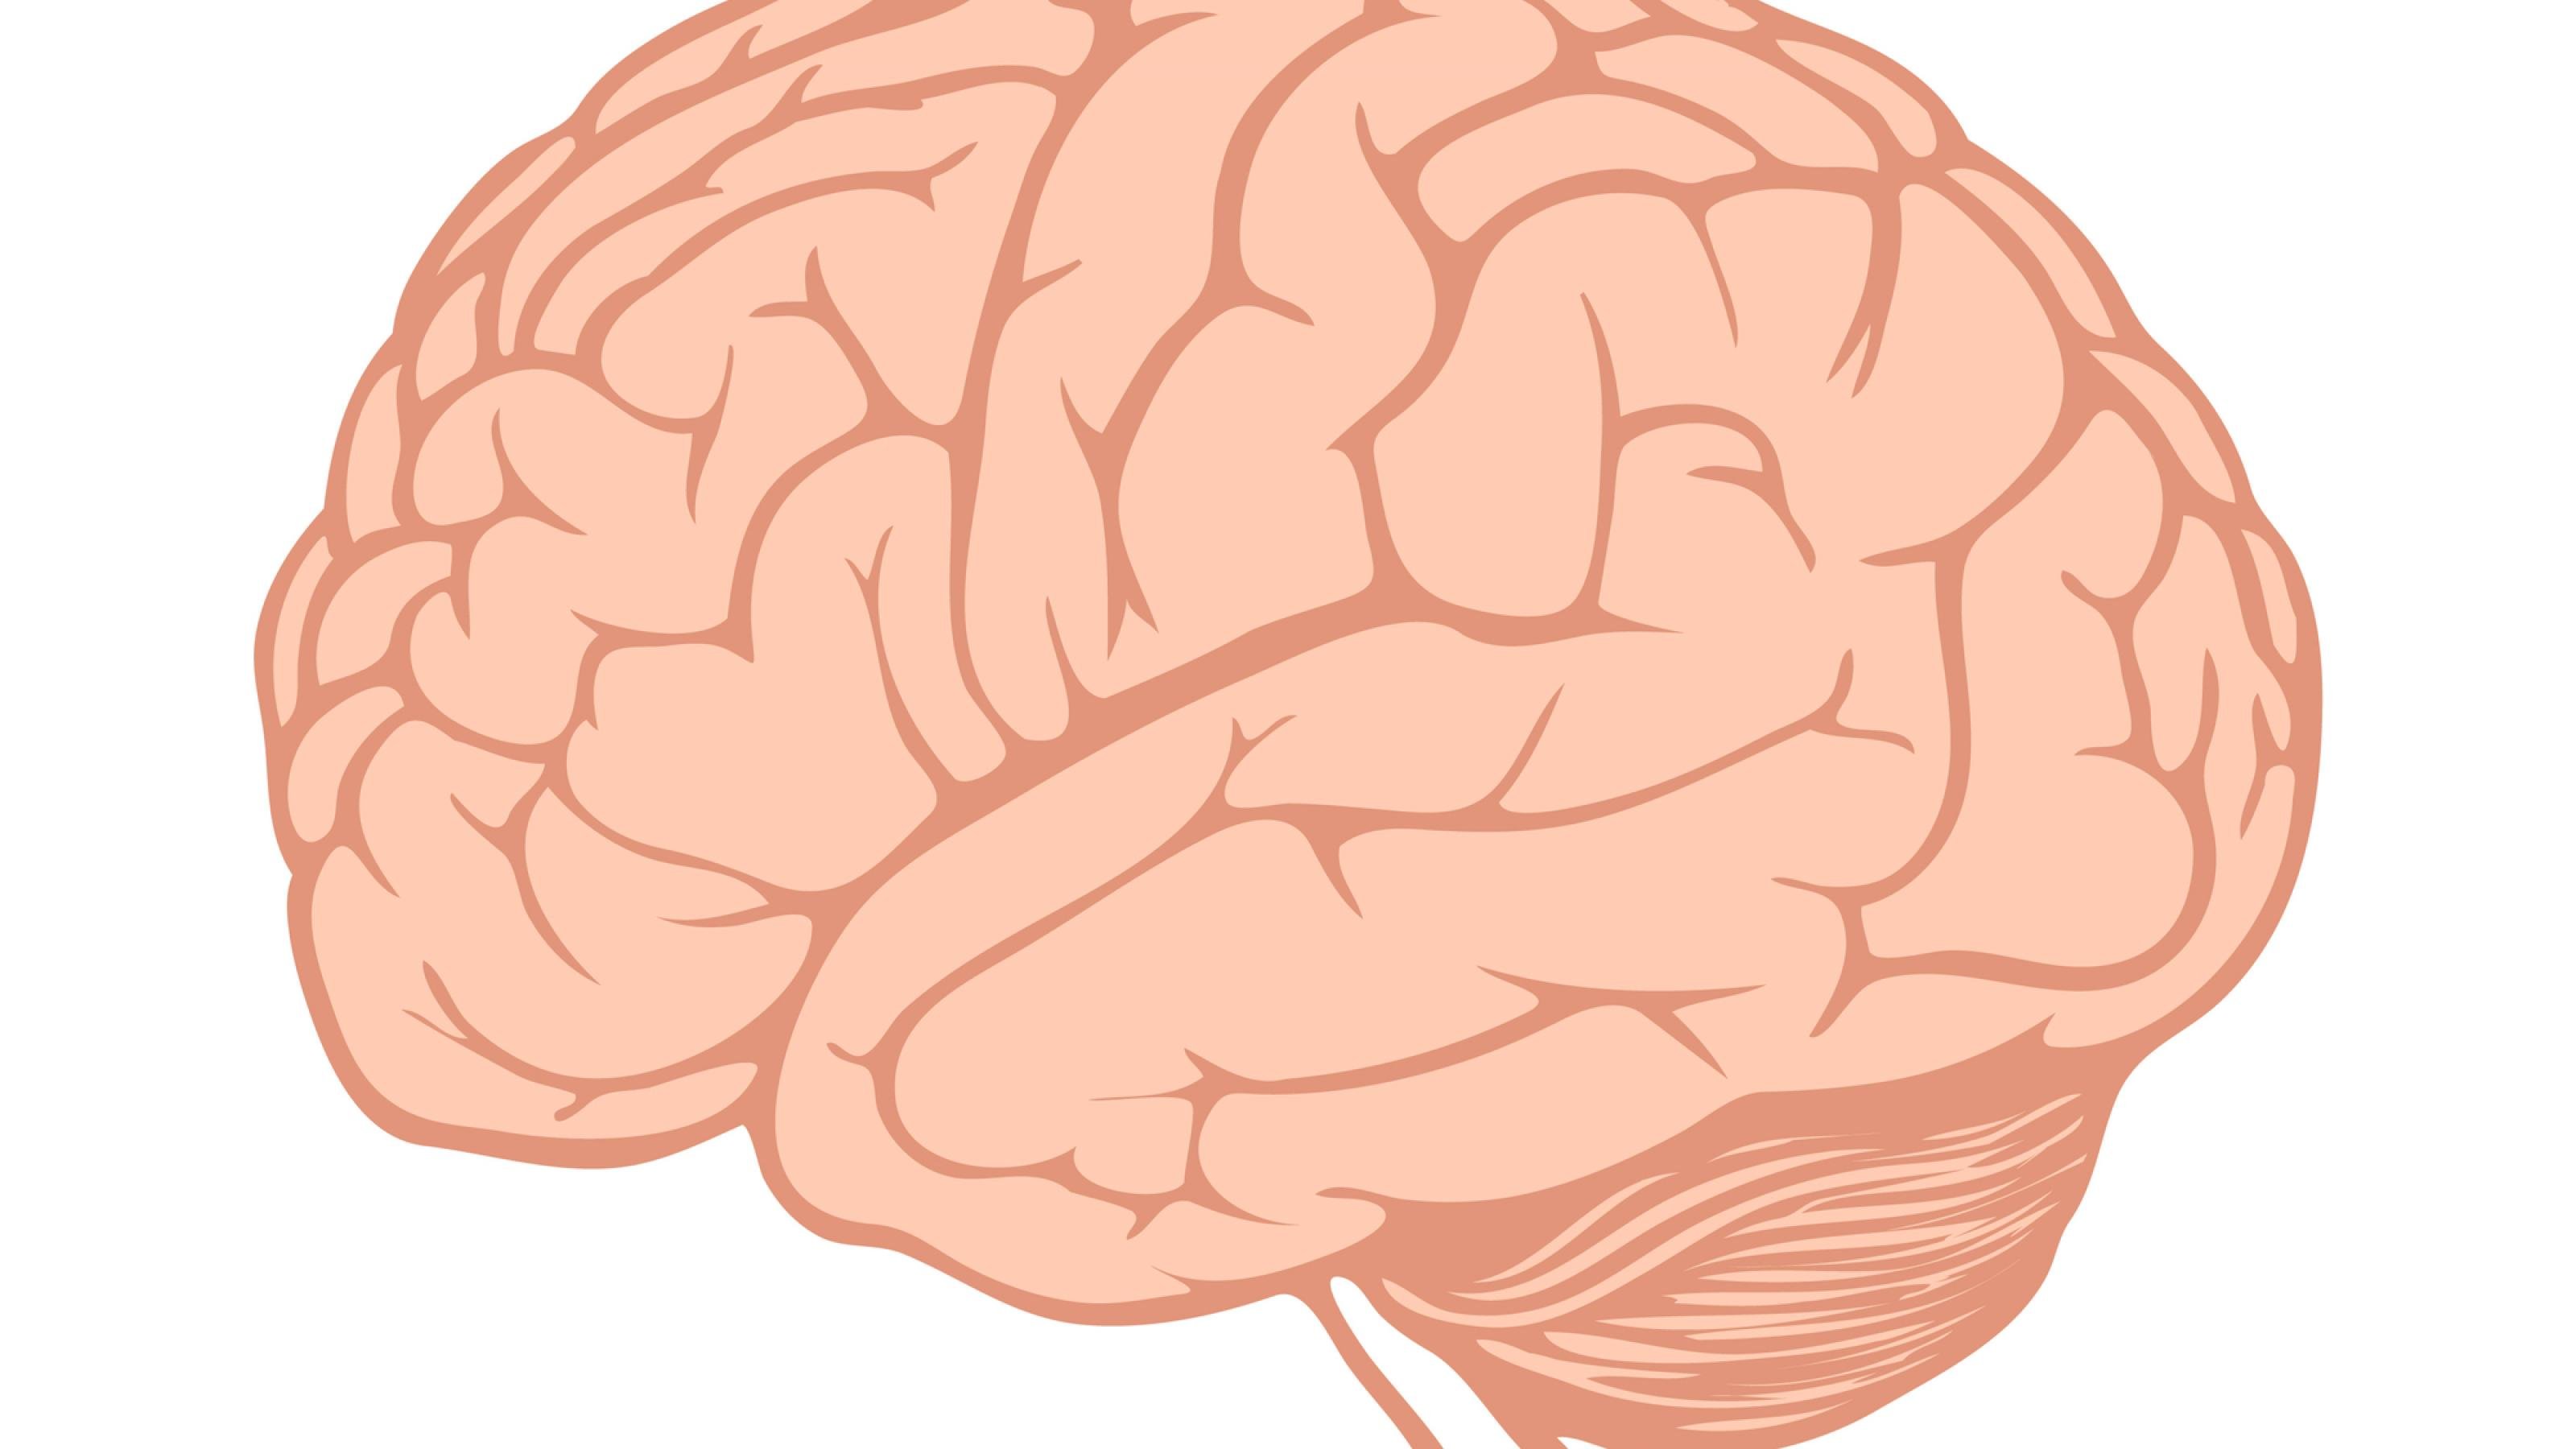 Die Illustration zeigt das menschliche Gehirn.